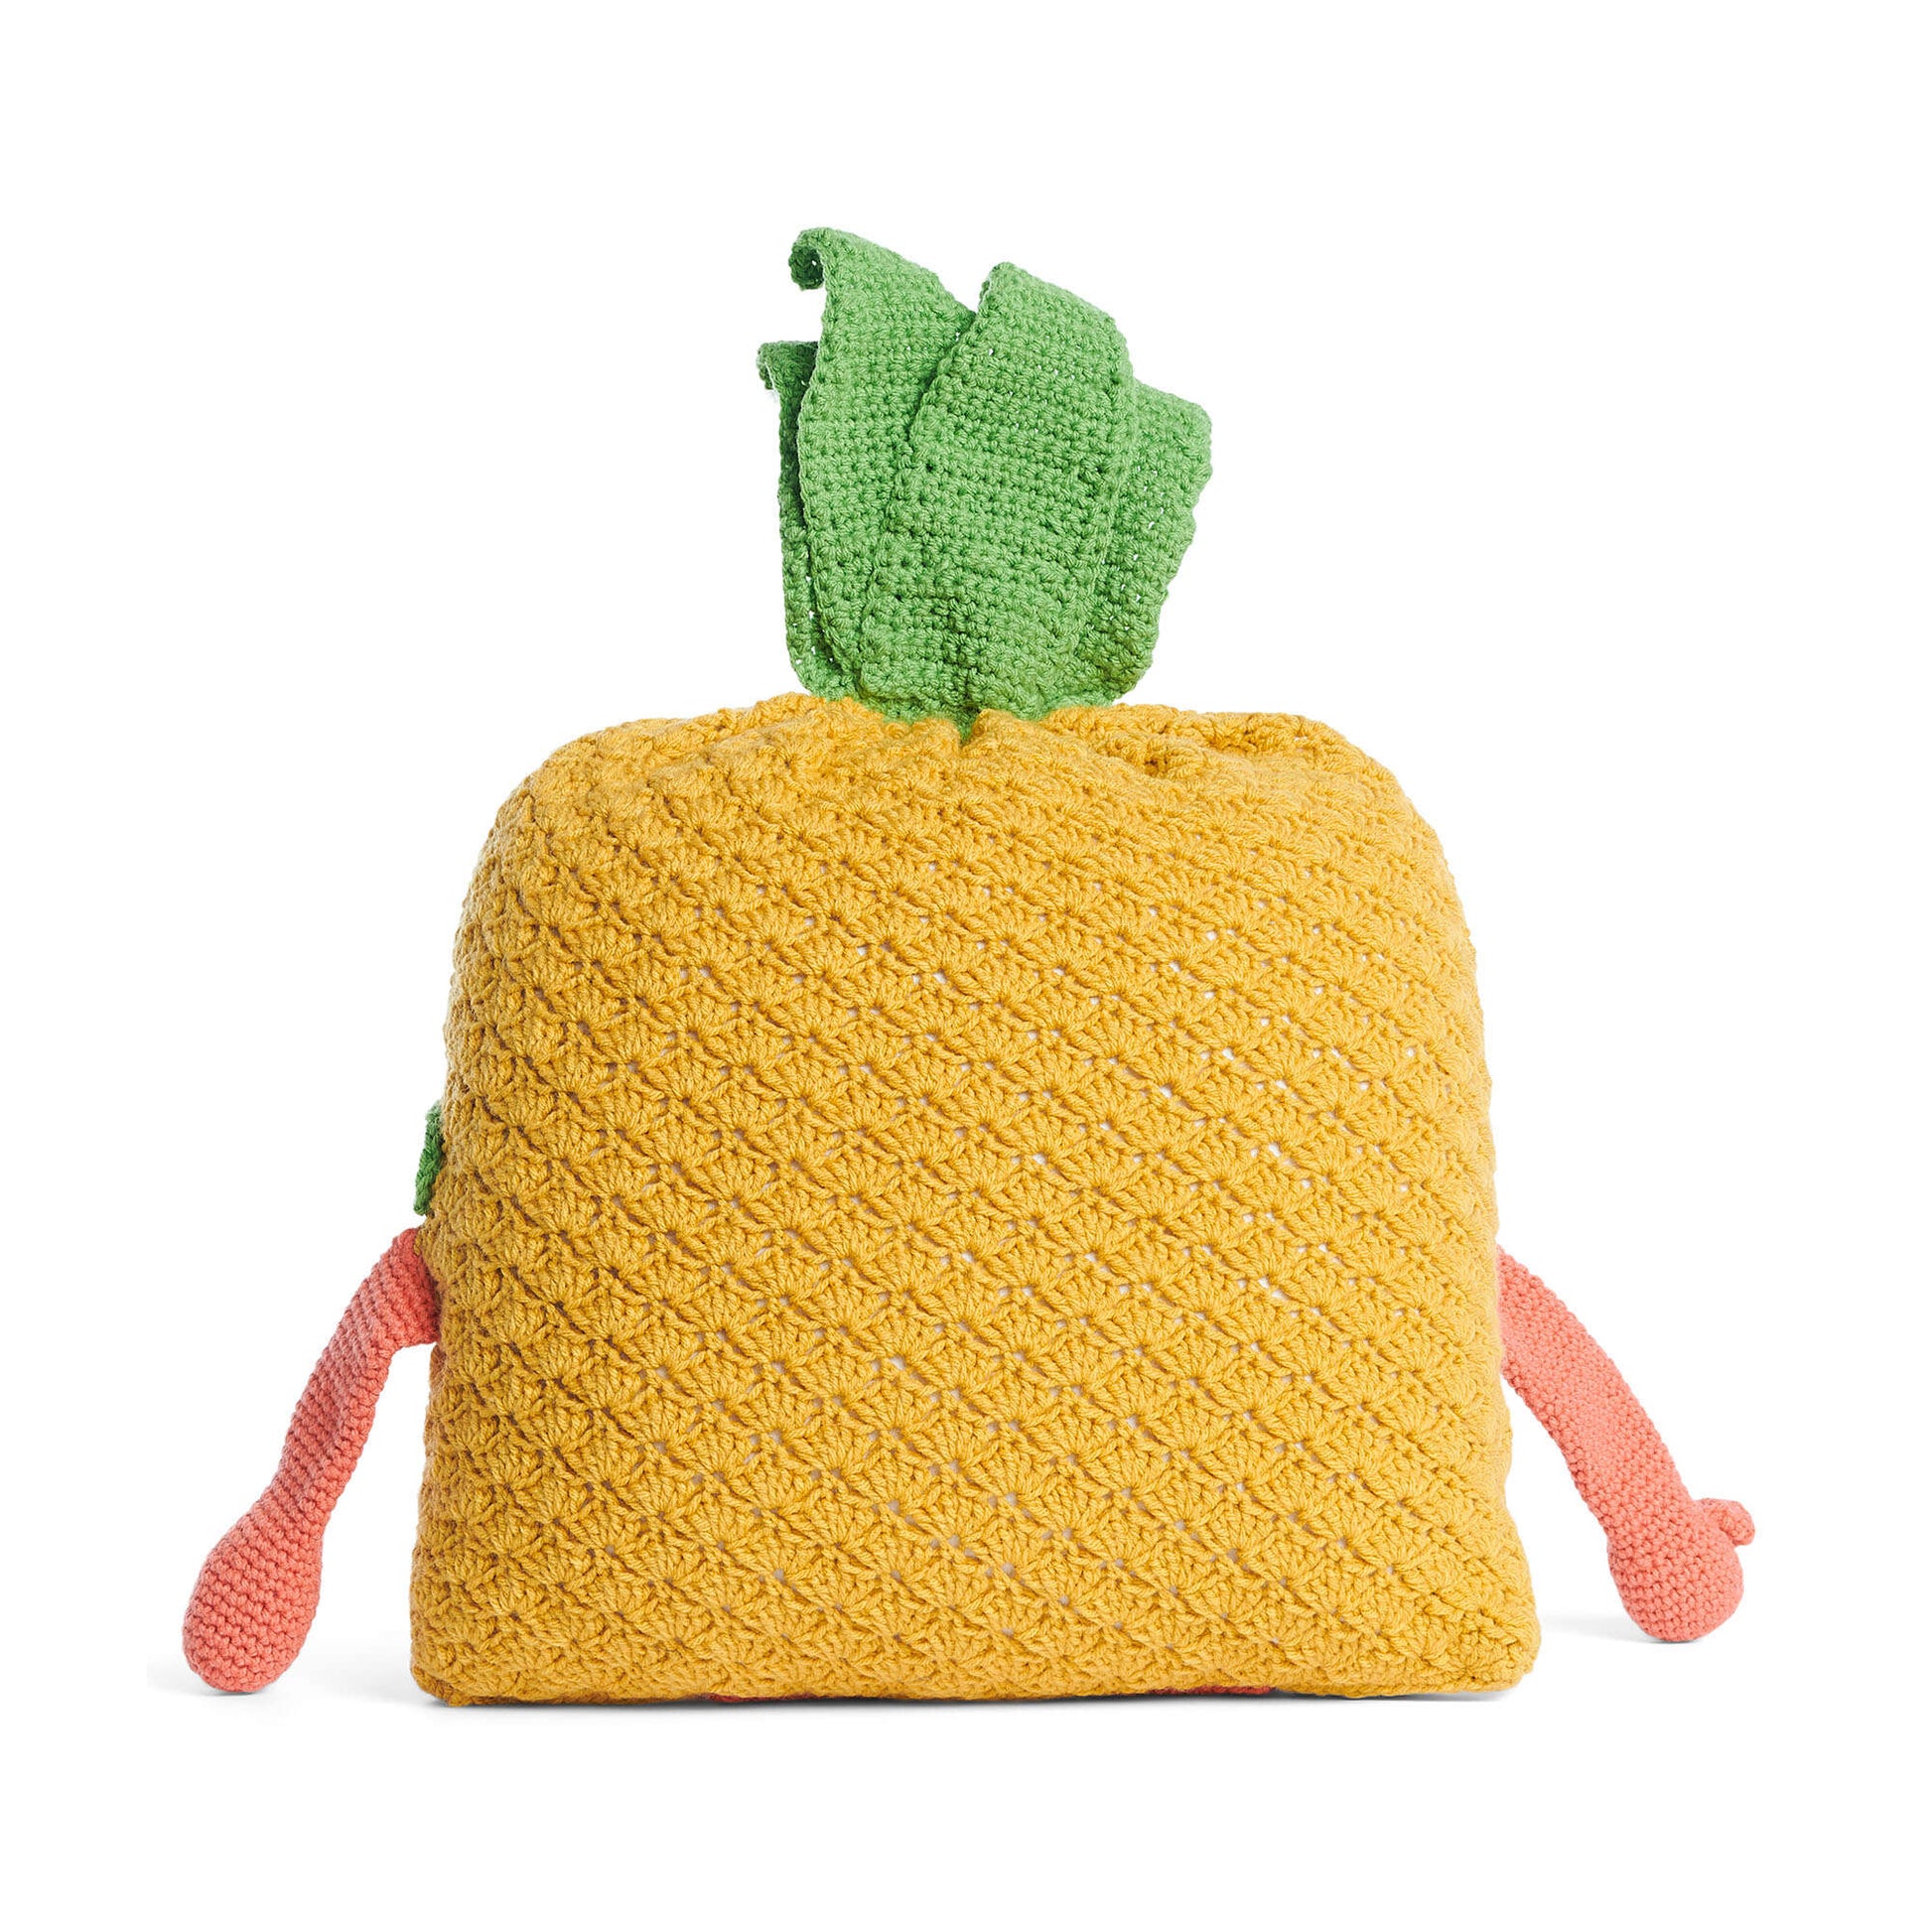 Free Caron Pineapple Crochet Study Buddy Pattern